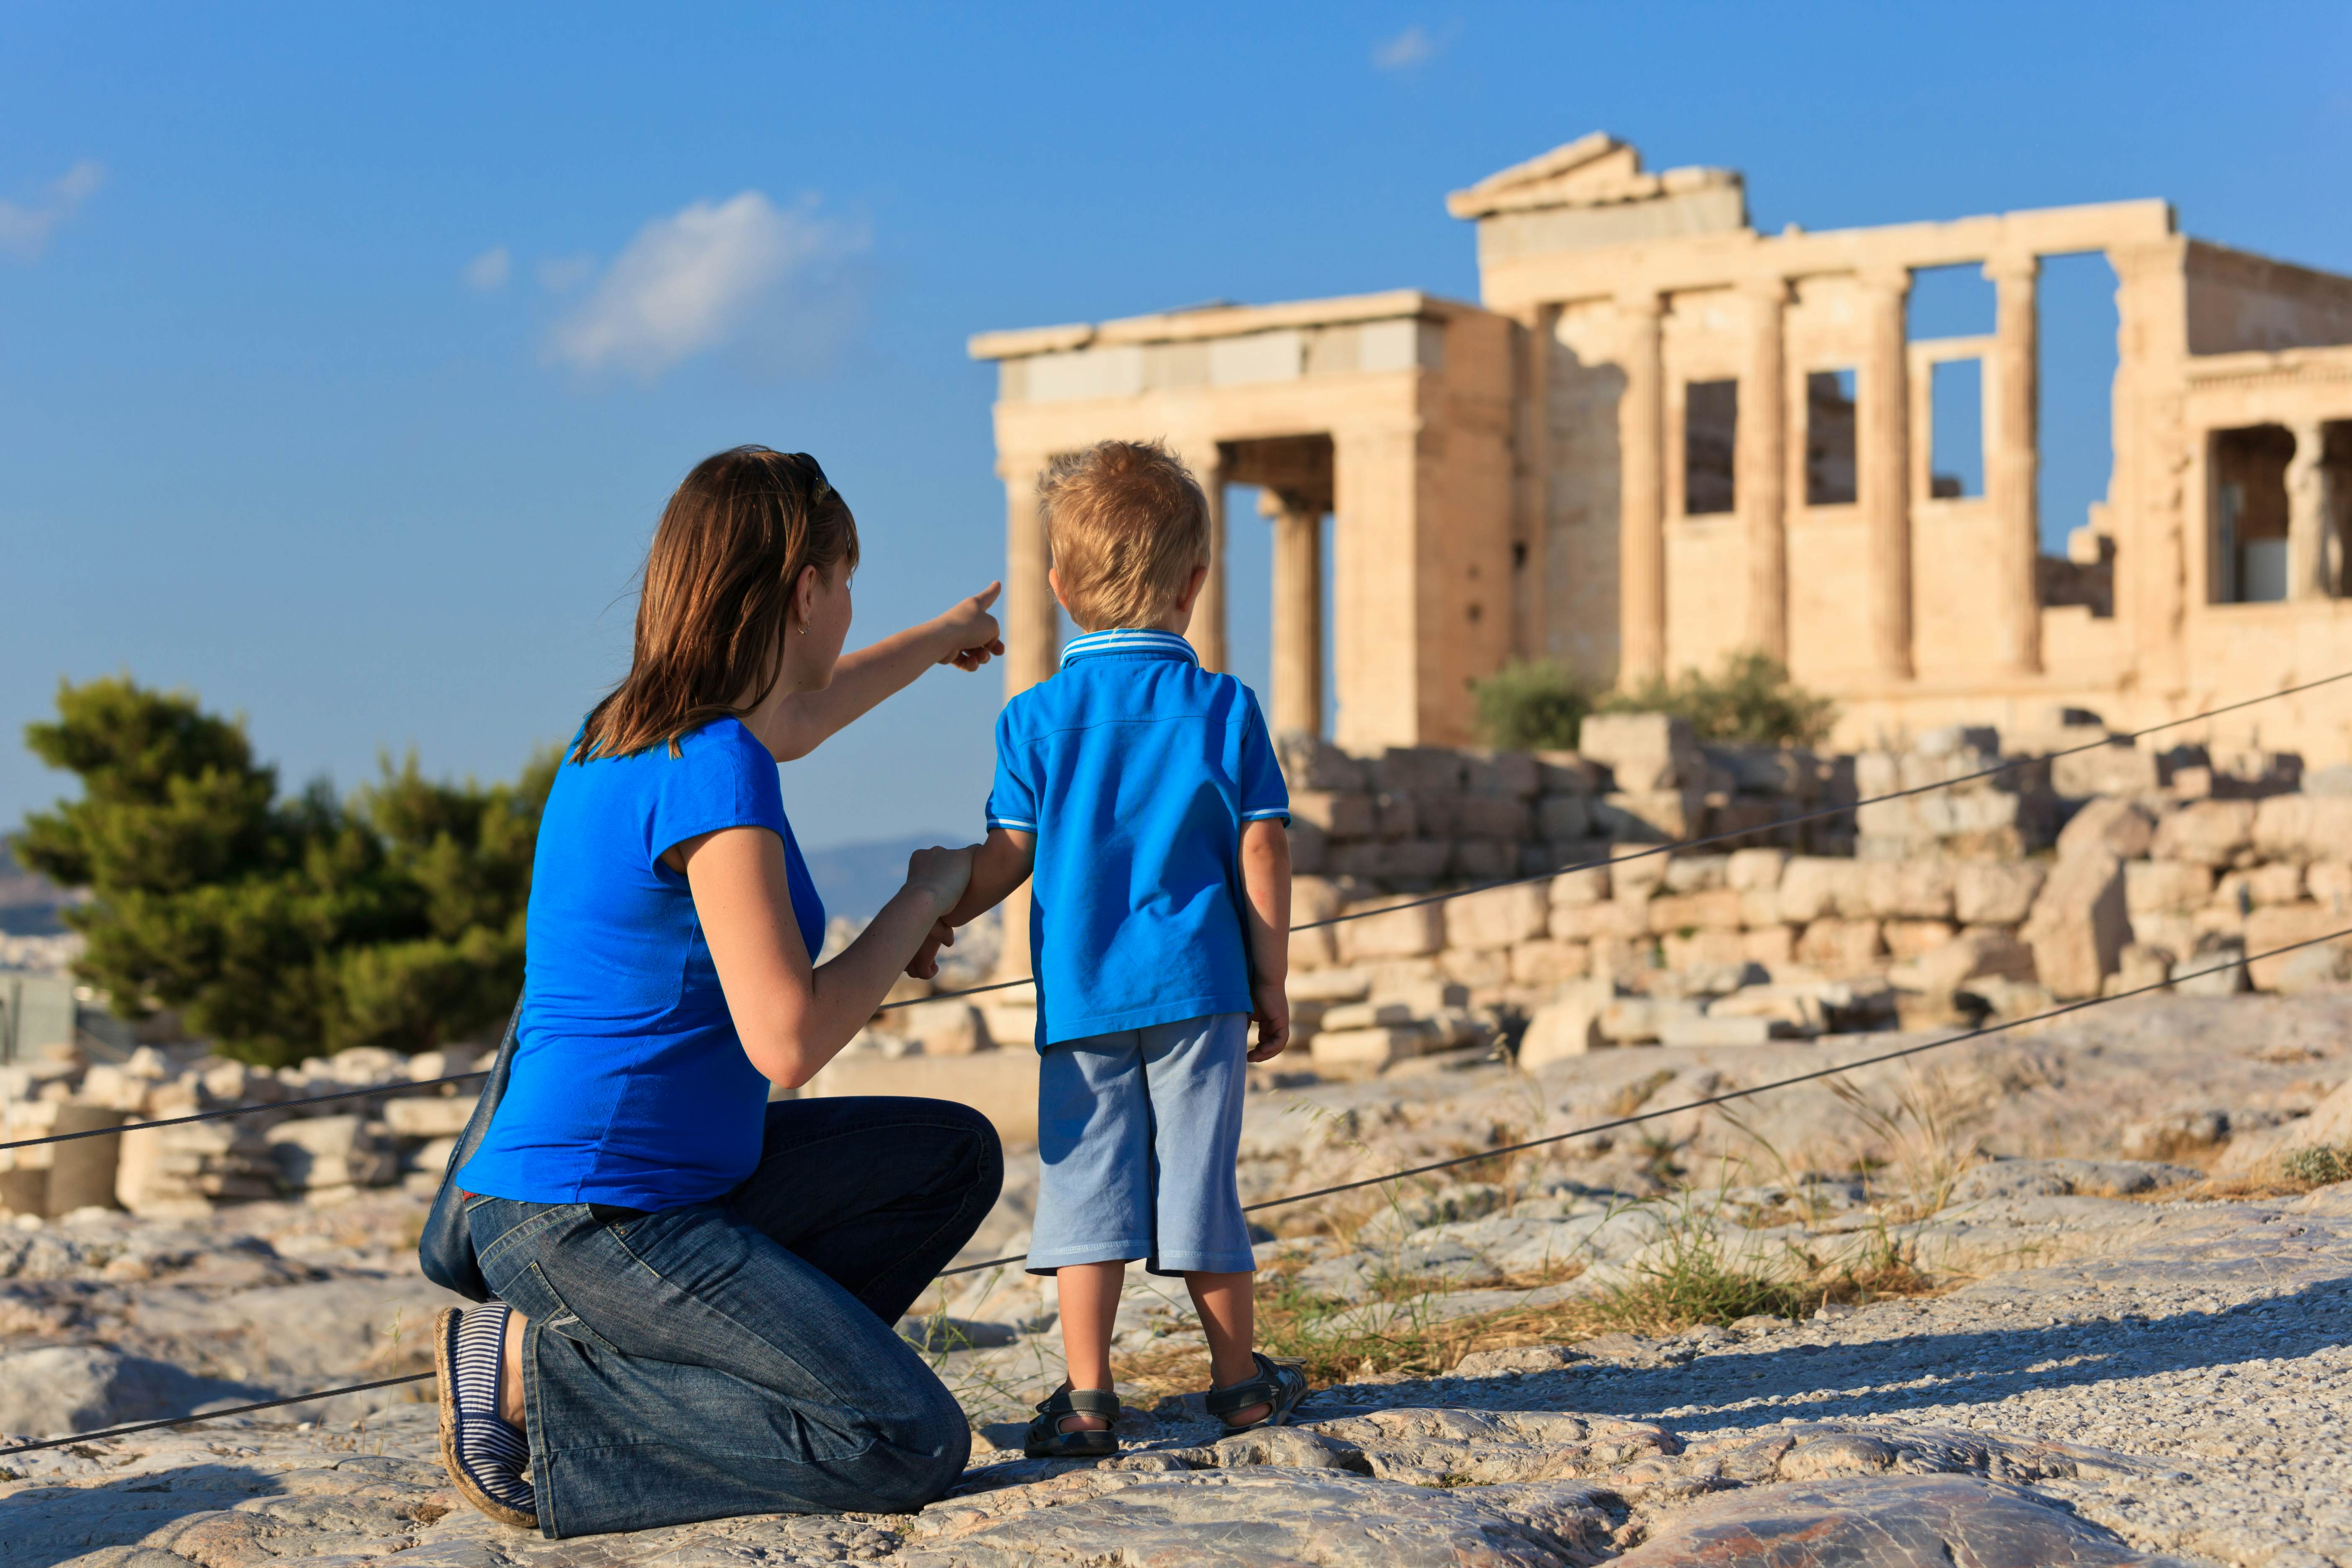 CretAquarium visit with Kids Love Greece